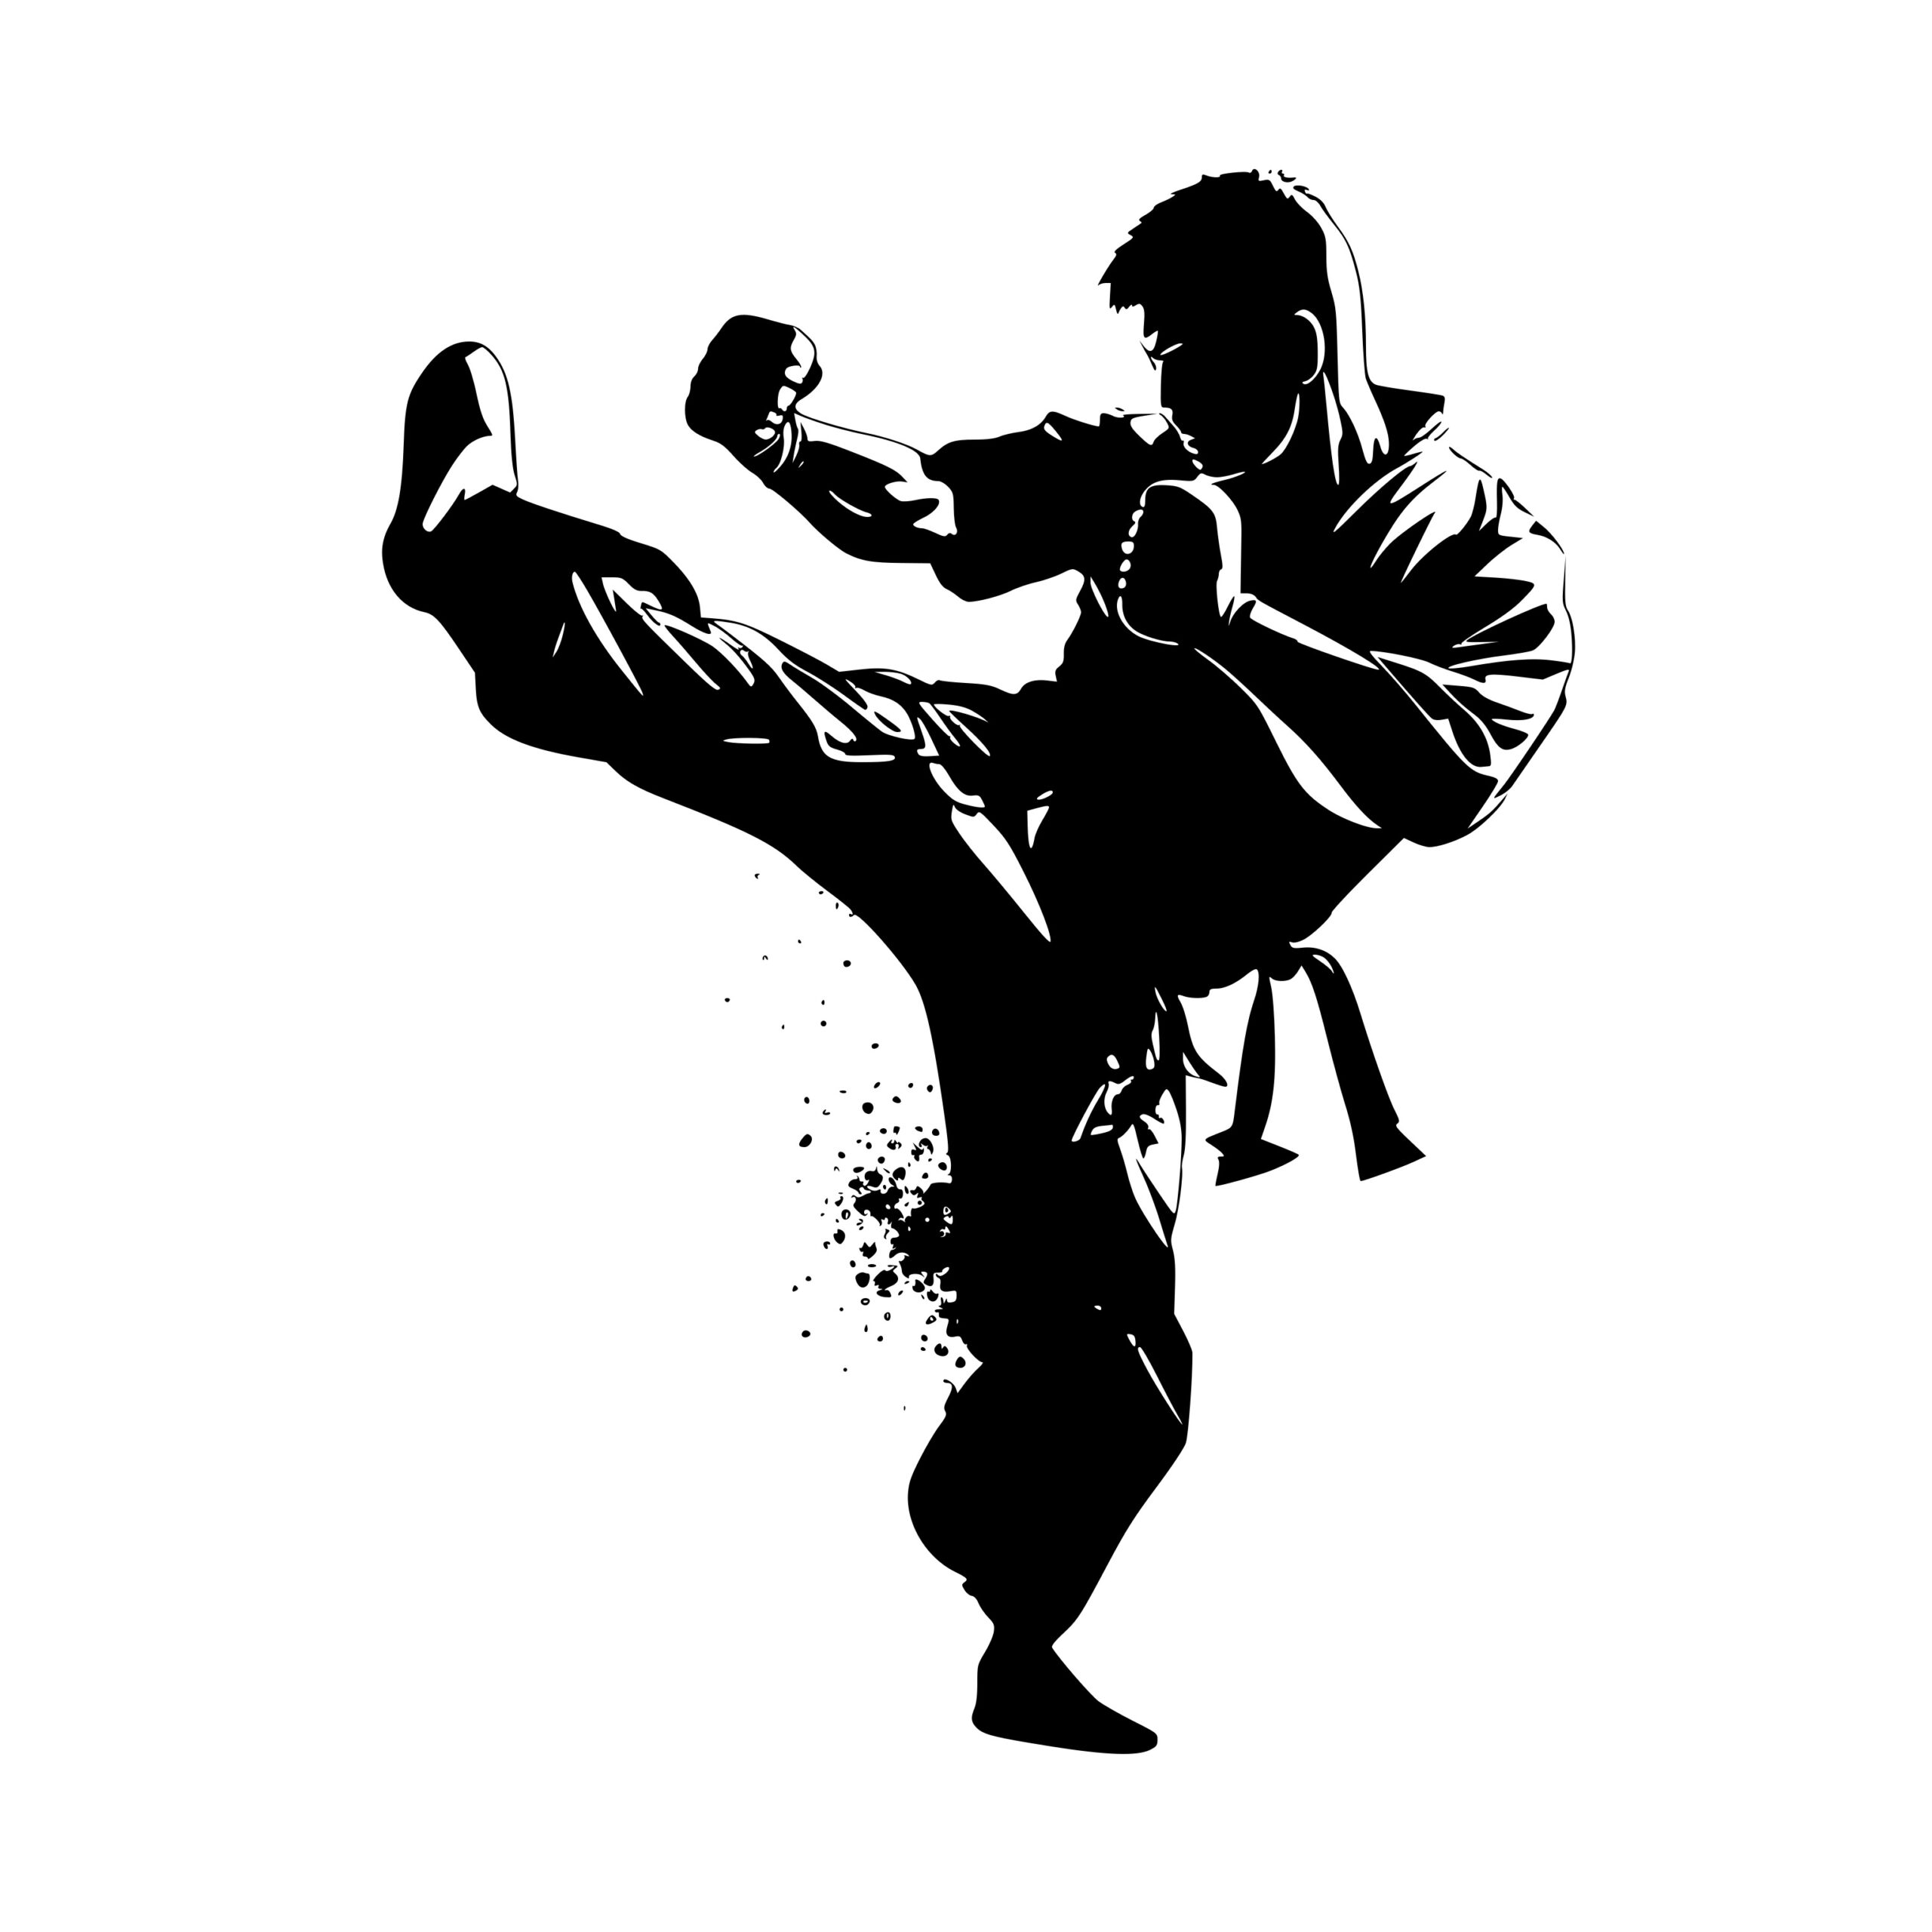 Karate Kicks SVG Image: Instant Download for Cricut, Silhouette, Laser